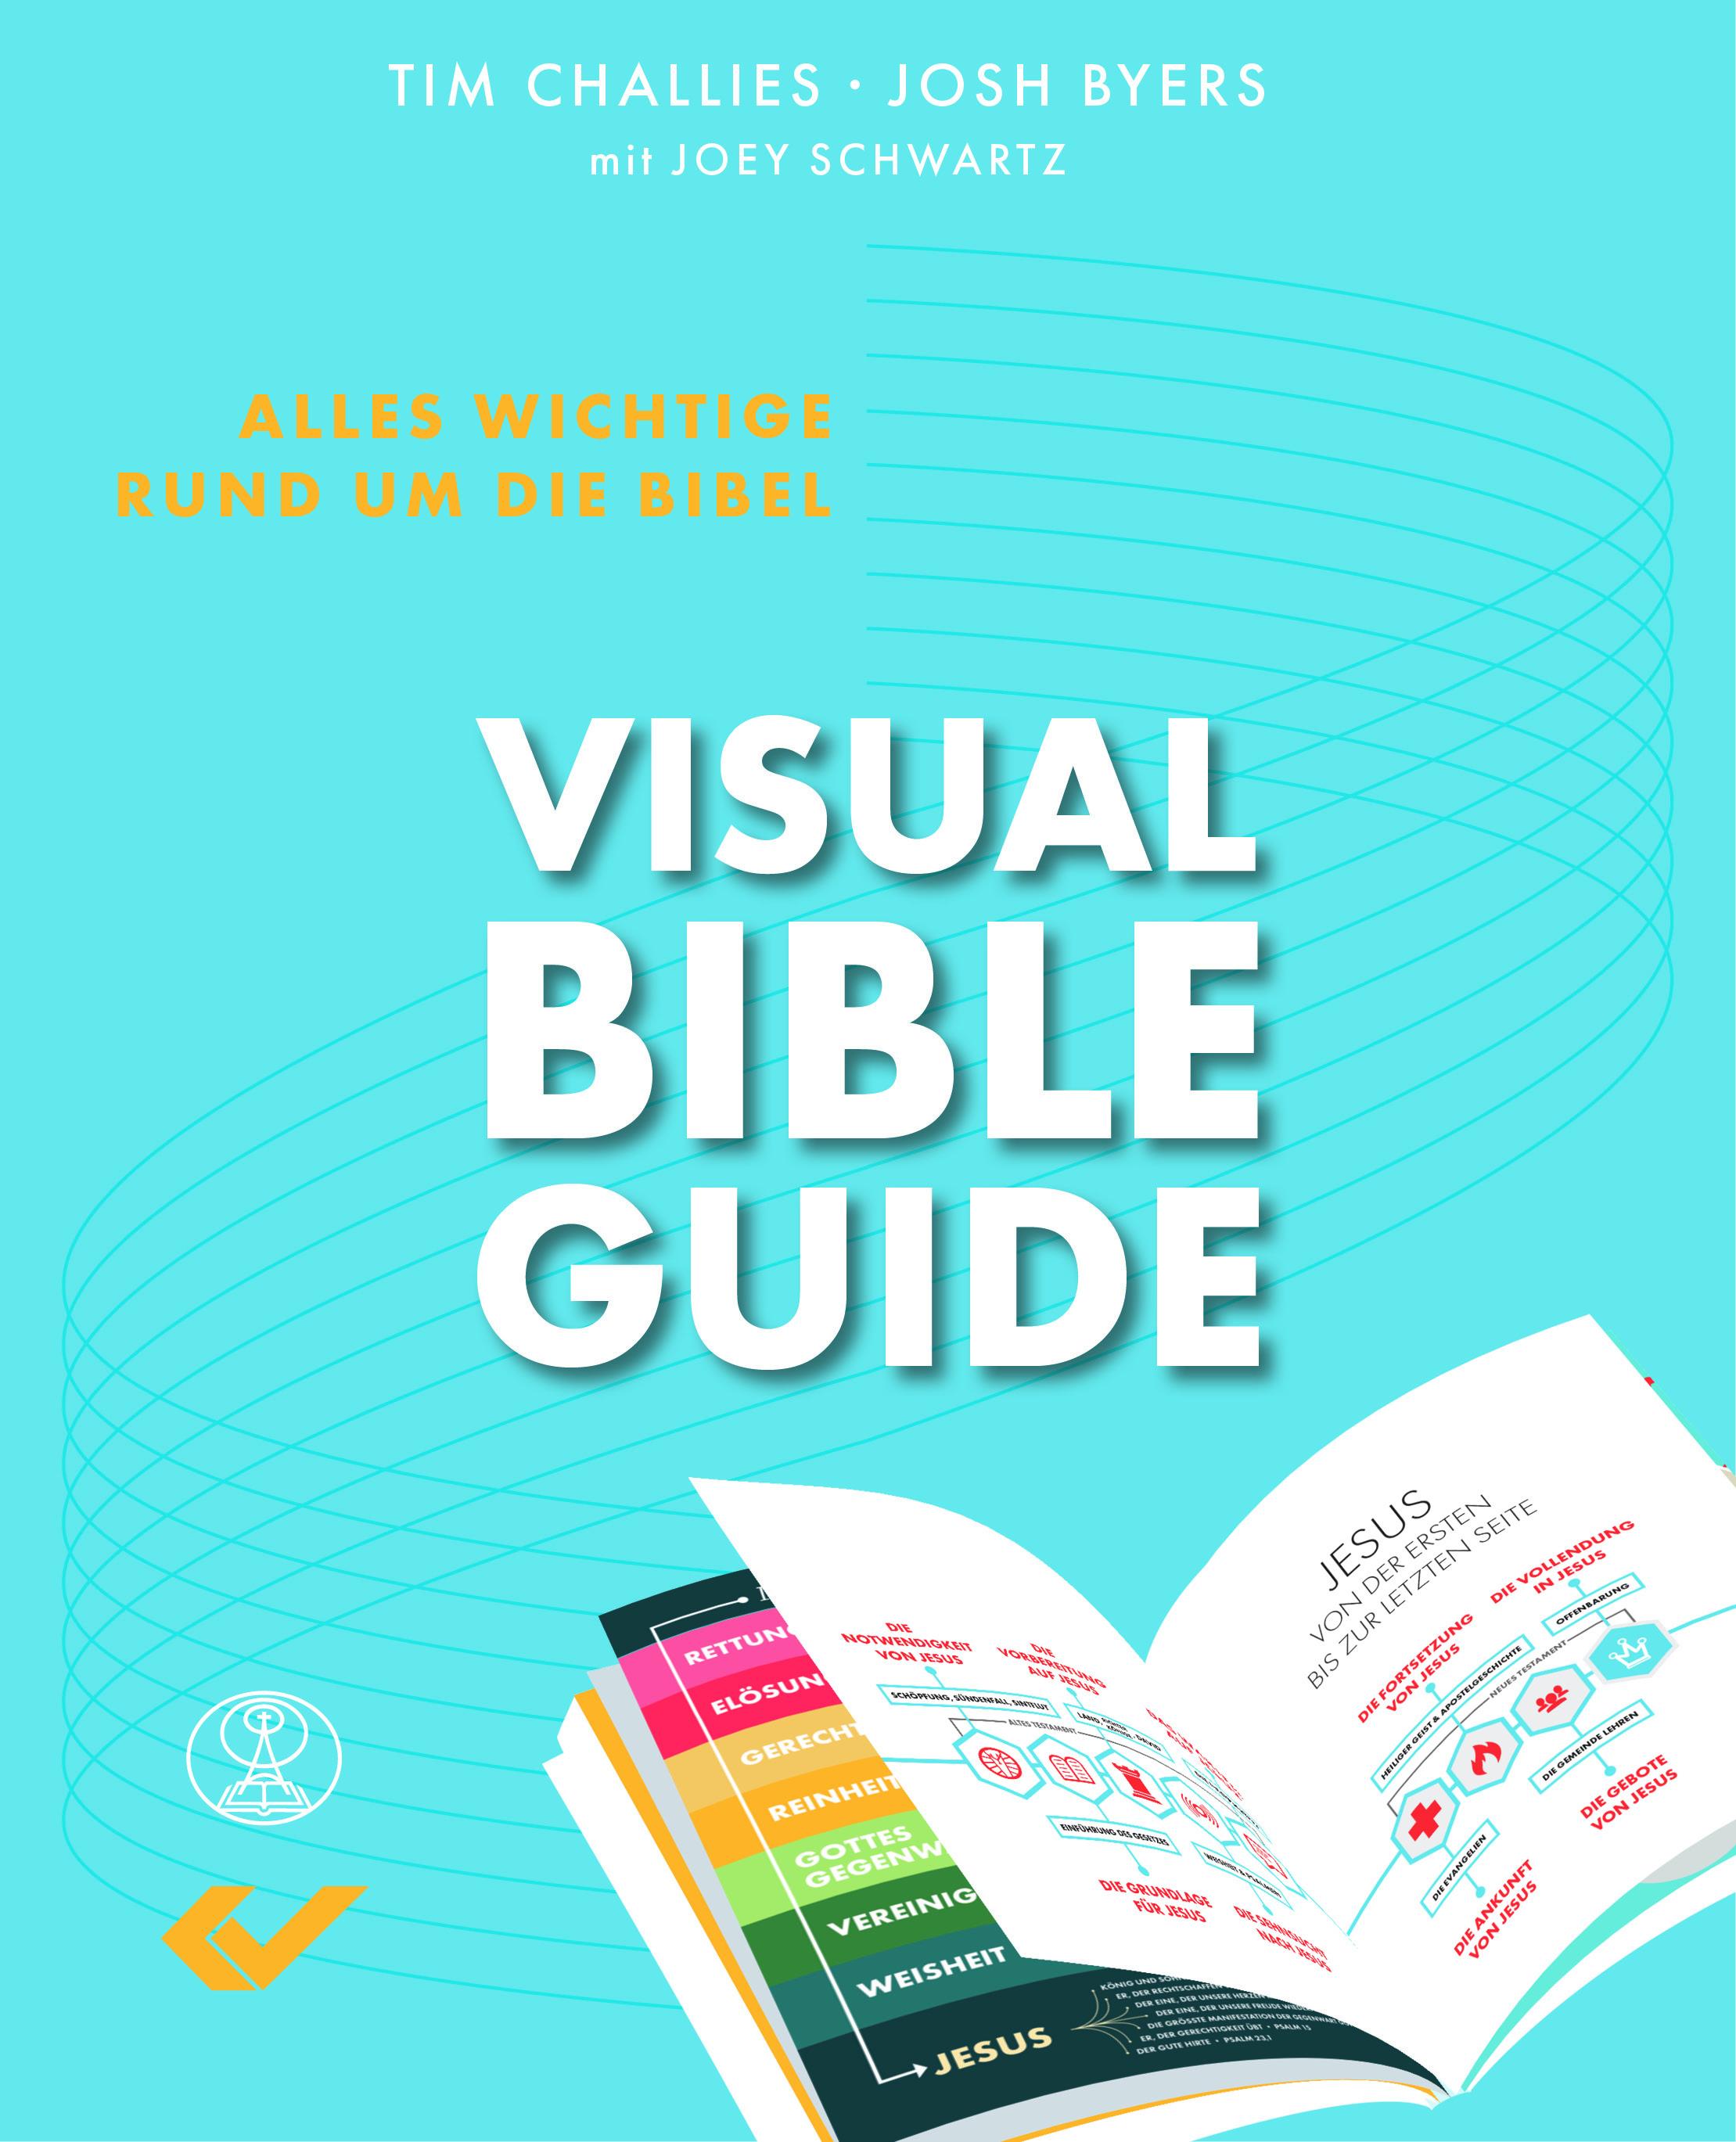 Visual Bible Guide - Alles Wichtige rund um die Bibel